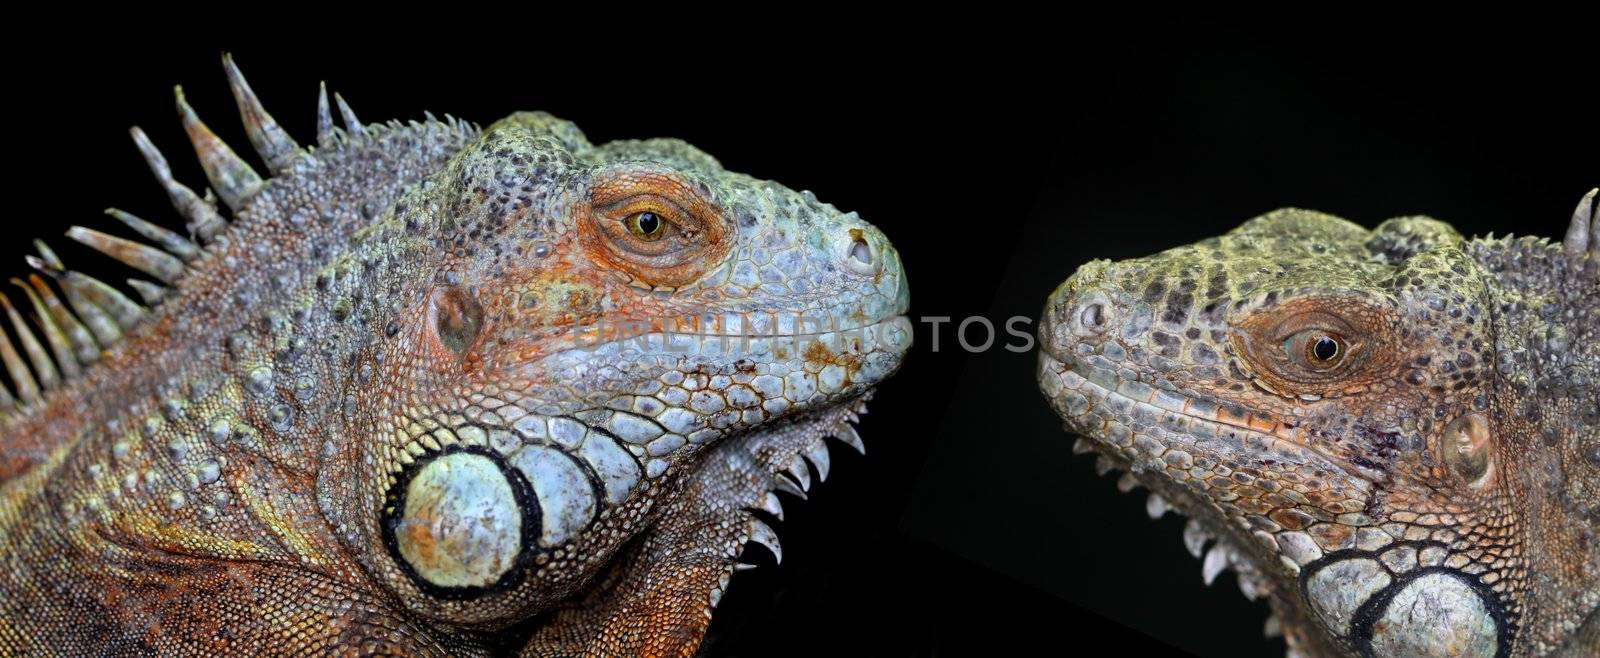 green iguanas by erllre